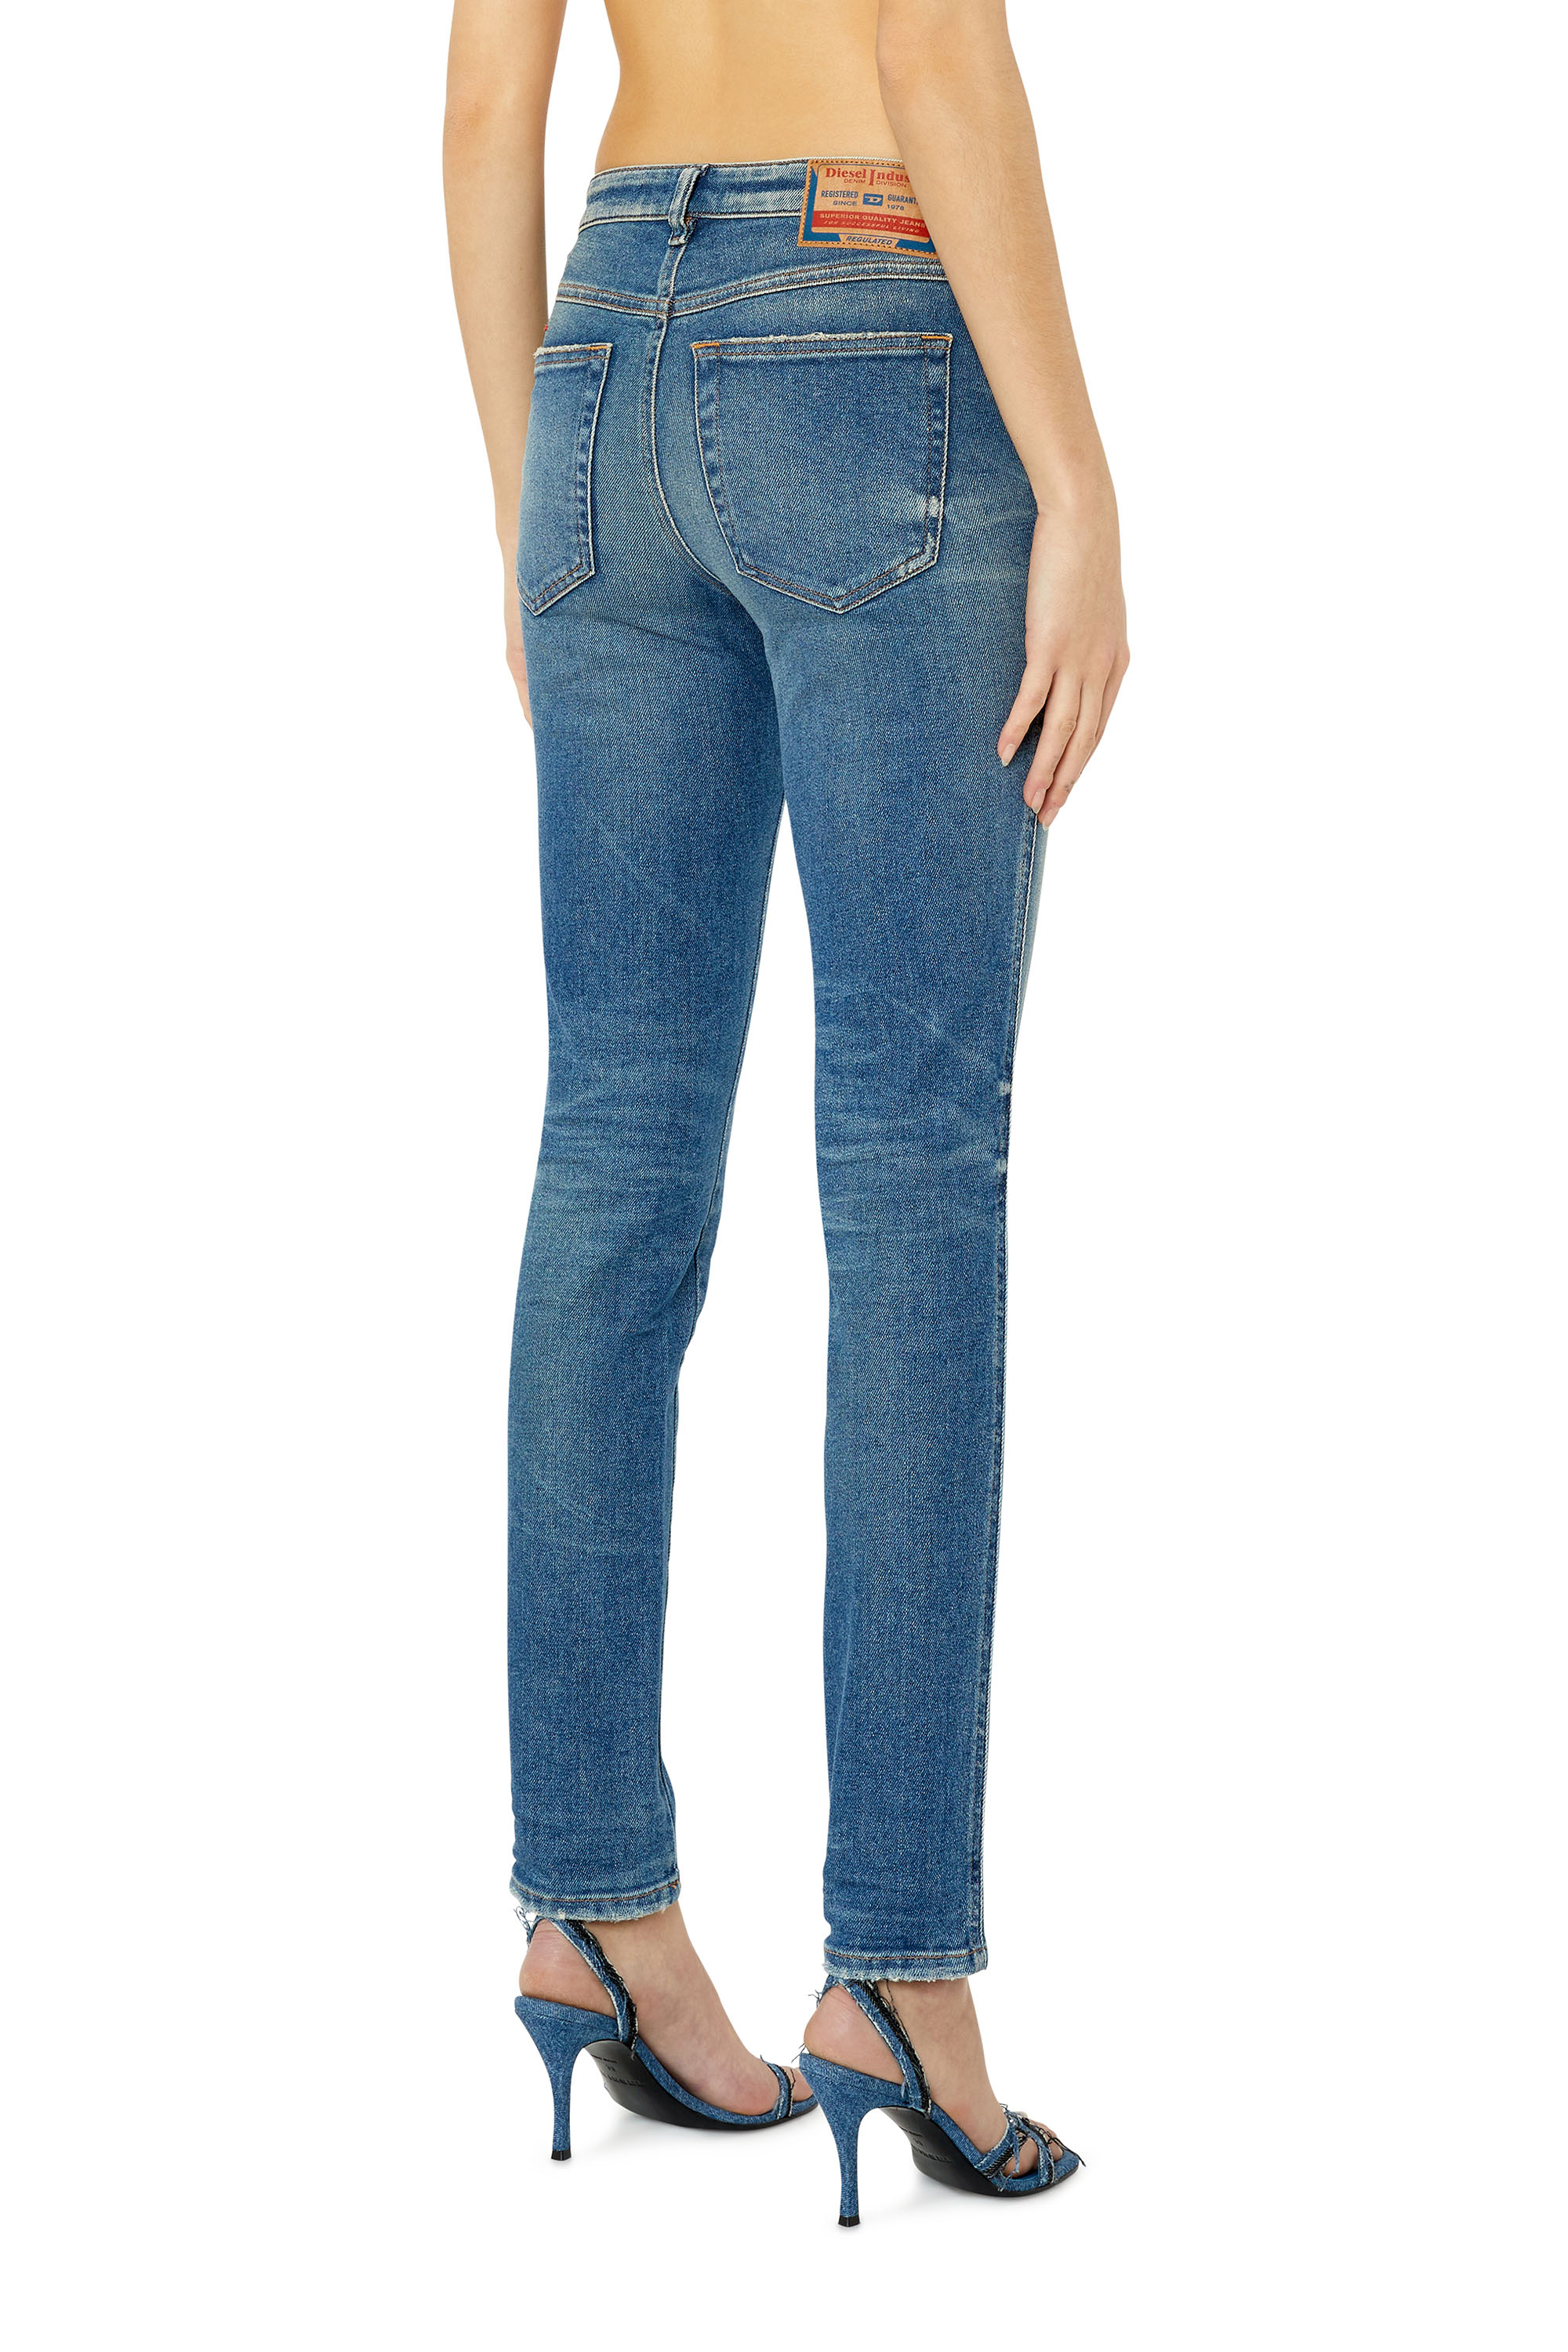 Diesel - Skinny Jeans 2015 Babhila 09E88,  - Image 4